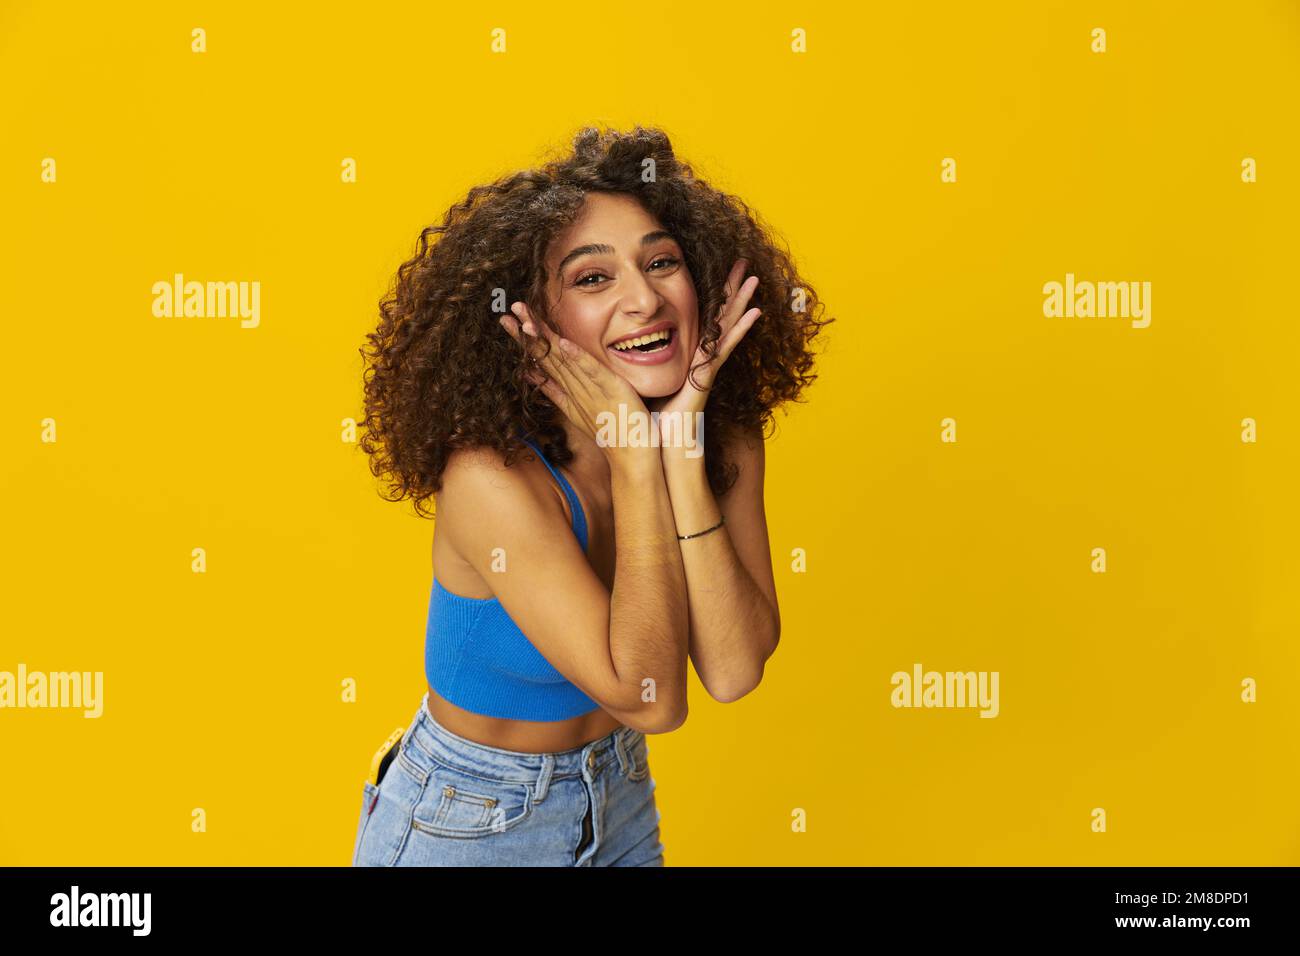 Femme aux cheveux bouclés afro dans un t-shirt bleu. signes de fond jaune avec ses mains, regarder dans la caméra, sourire avec les dents et le bonheur, copier Banque D'Images